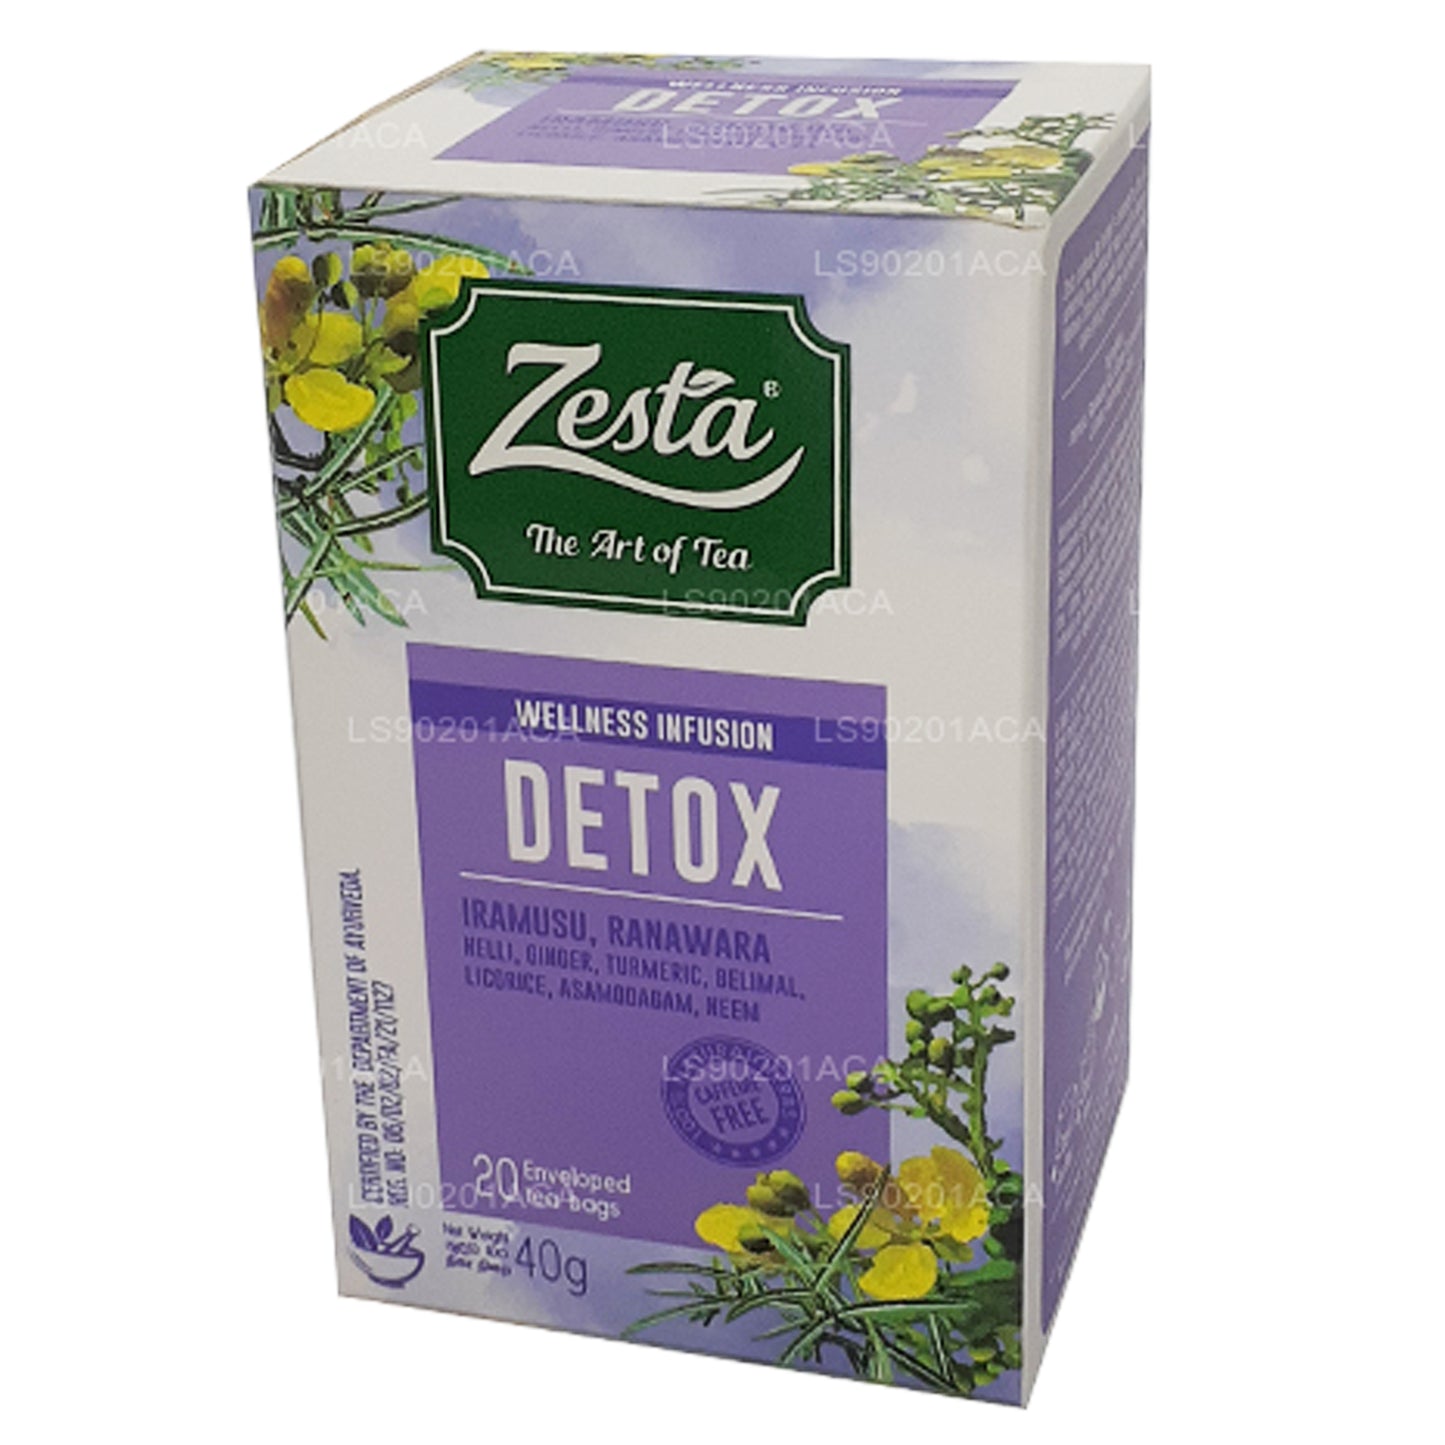 Zesta Detox Iramusu，Ranawara (40g) 20 个茶包